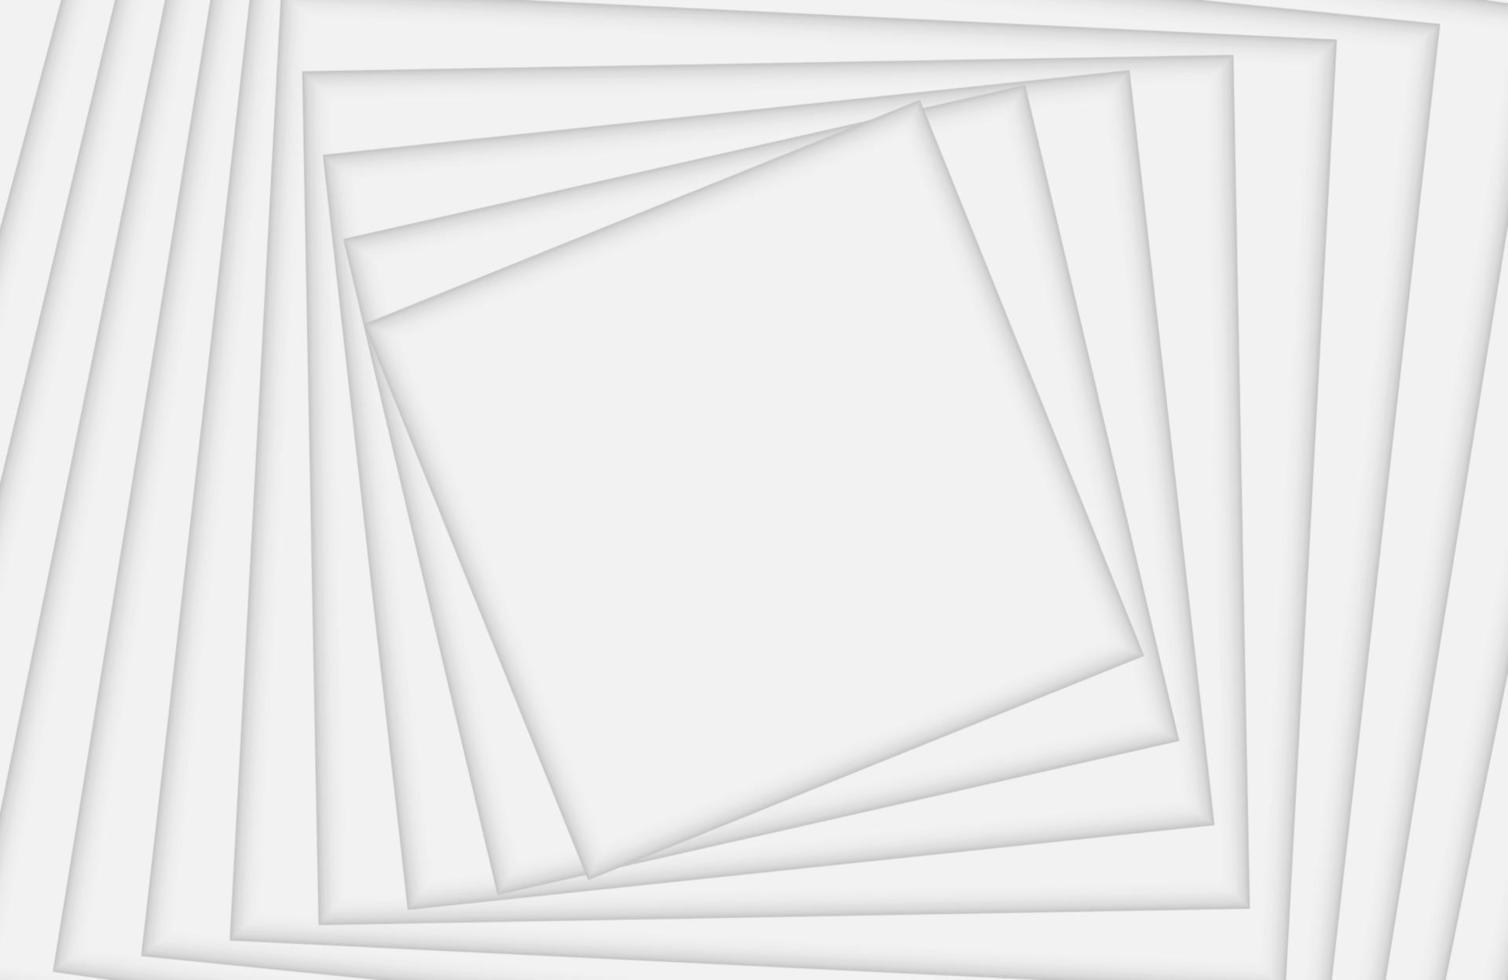 astratto geometrico bianco e grigio colore di sfondo vettore